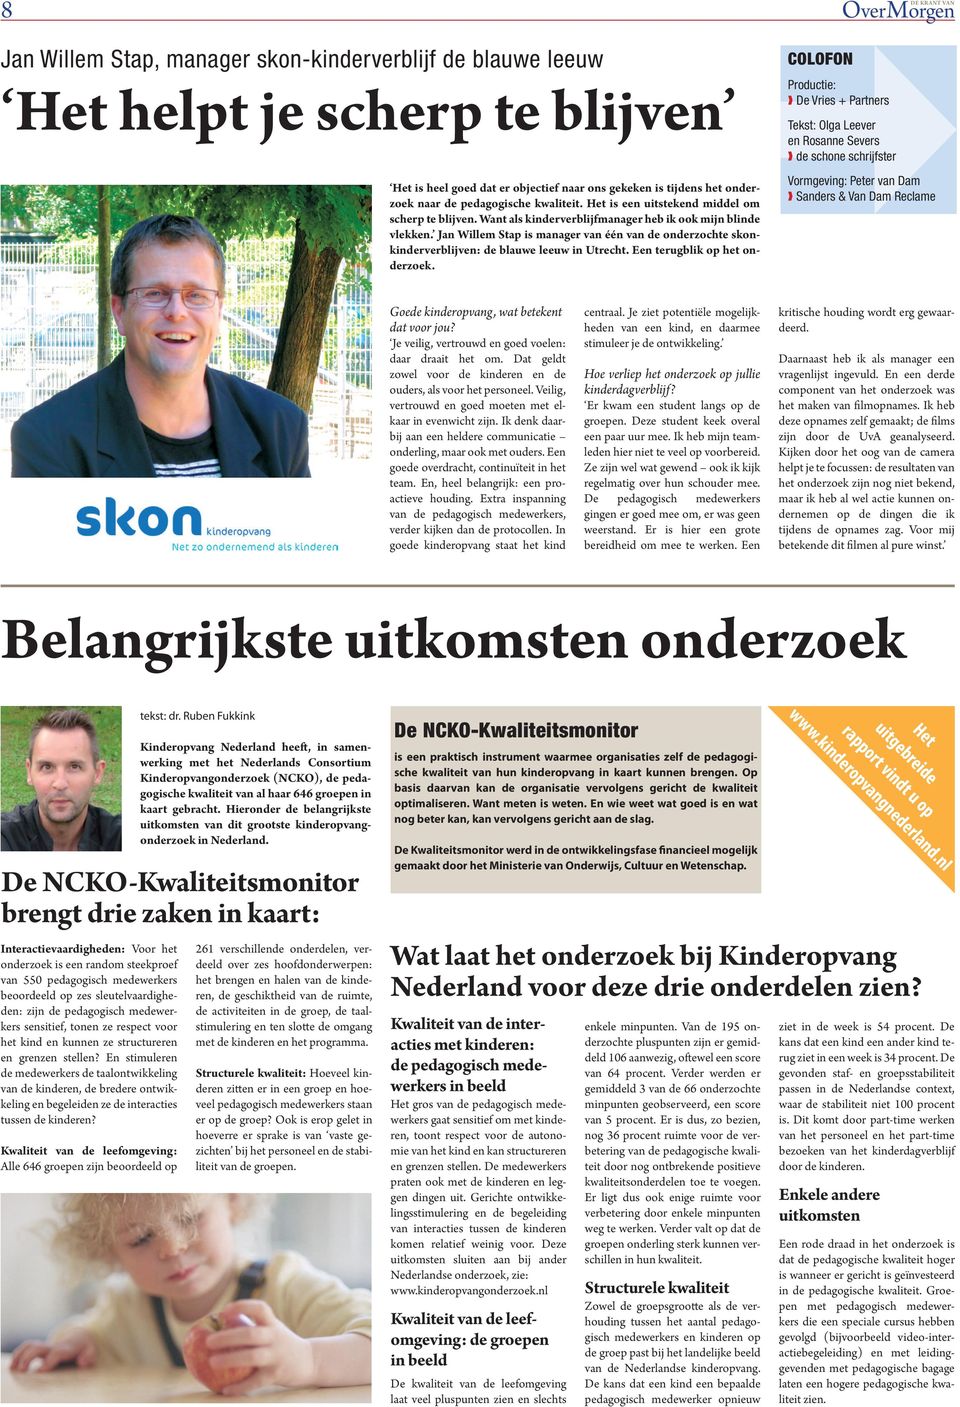 Jan Willem Stap is manager van één van de onderzochte skonkinderverblijven: de blauwe leeuw in Utrecht. Een terugblik op het onderzoek.